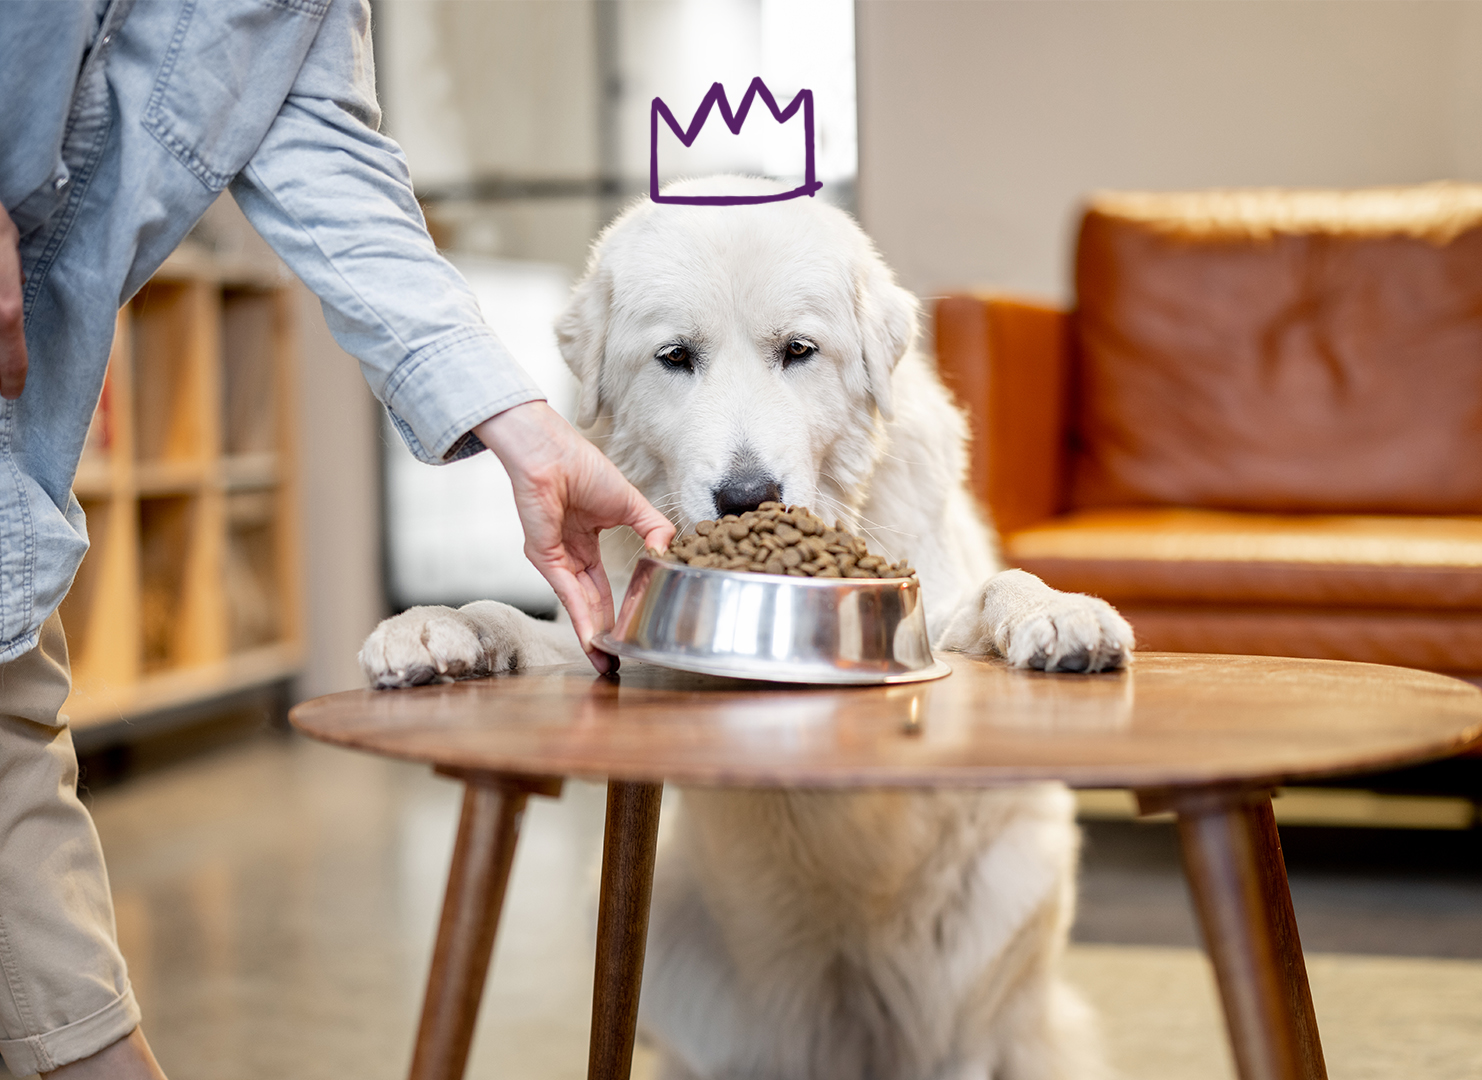 Fun Healthy Ways to Spoil Your Pup #SpoilYourPupBBxx - Golden Woofs